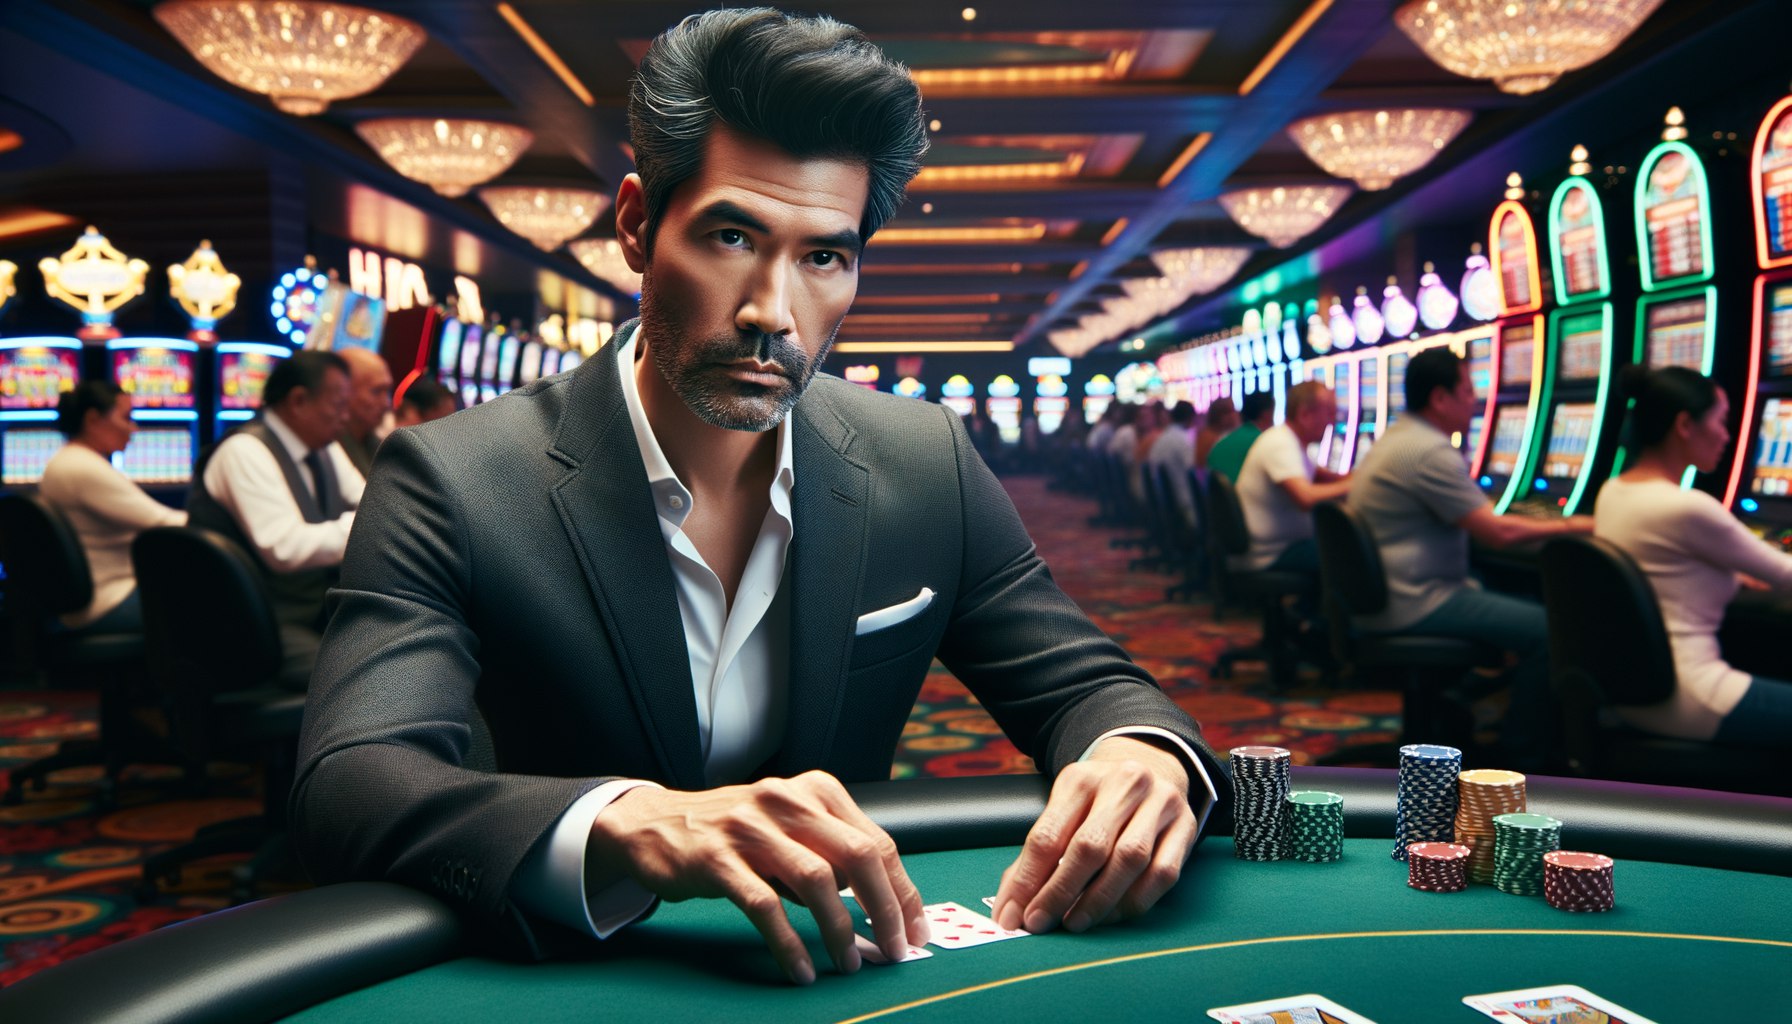 На что обратить внимание при игре в казино онлайн: бонусы и акции, советы по выигрышу